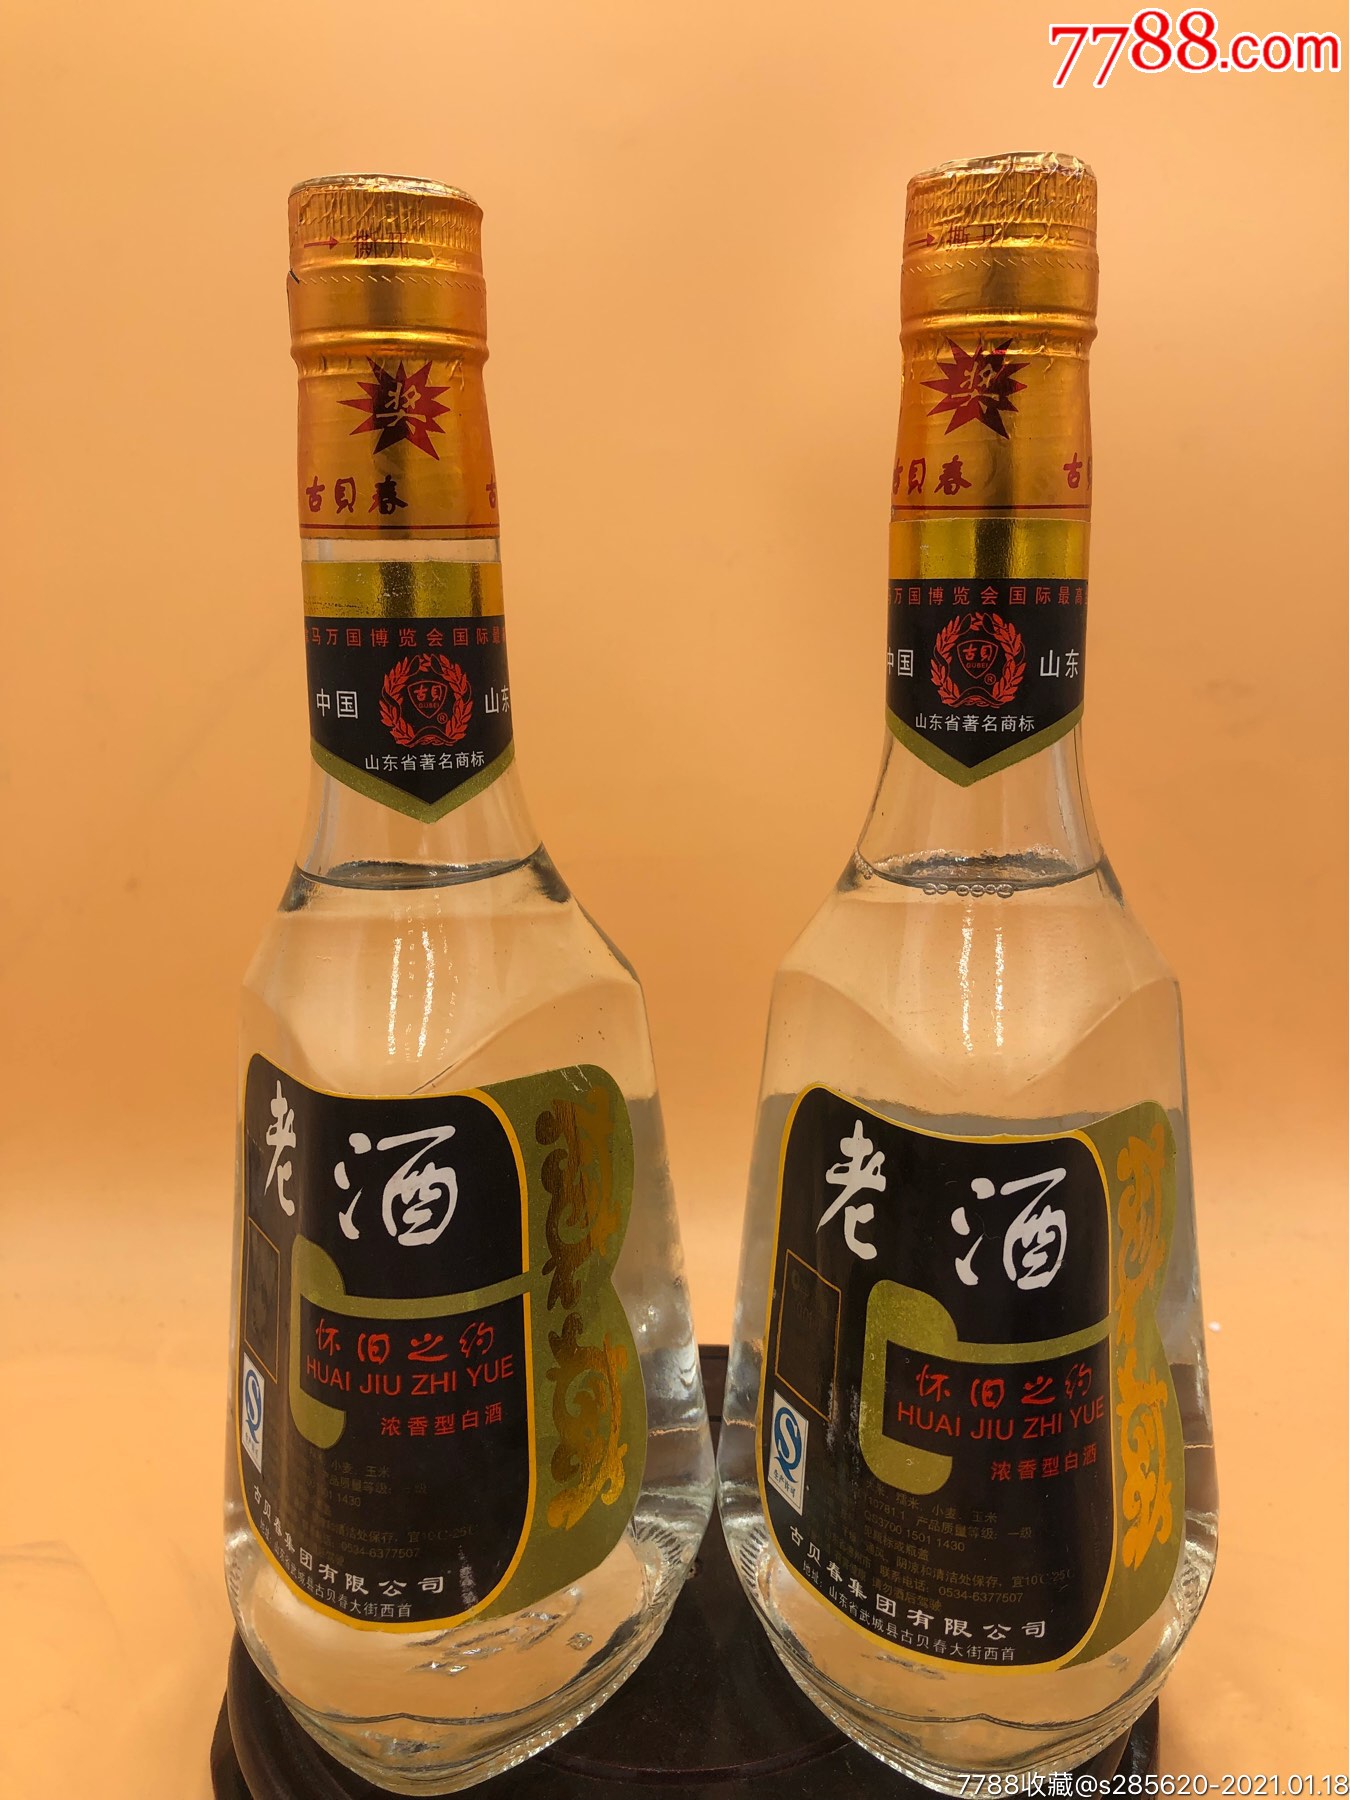 赵炎古贝春酒广告图片